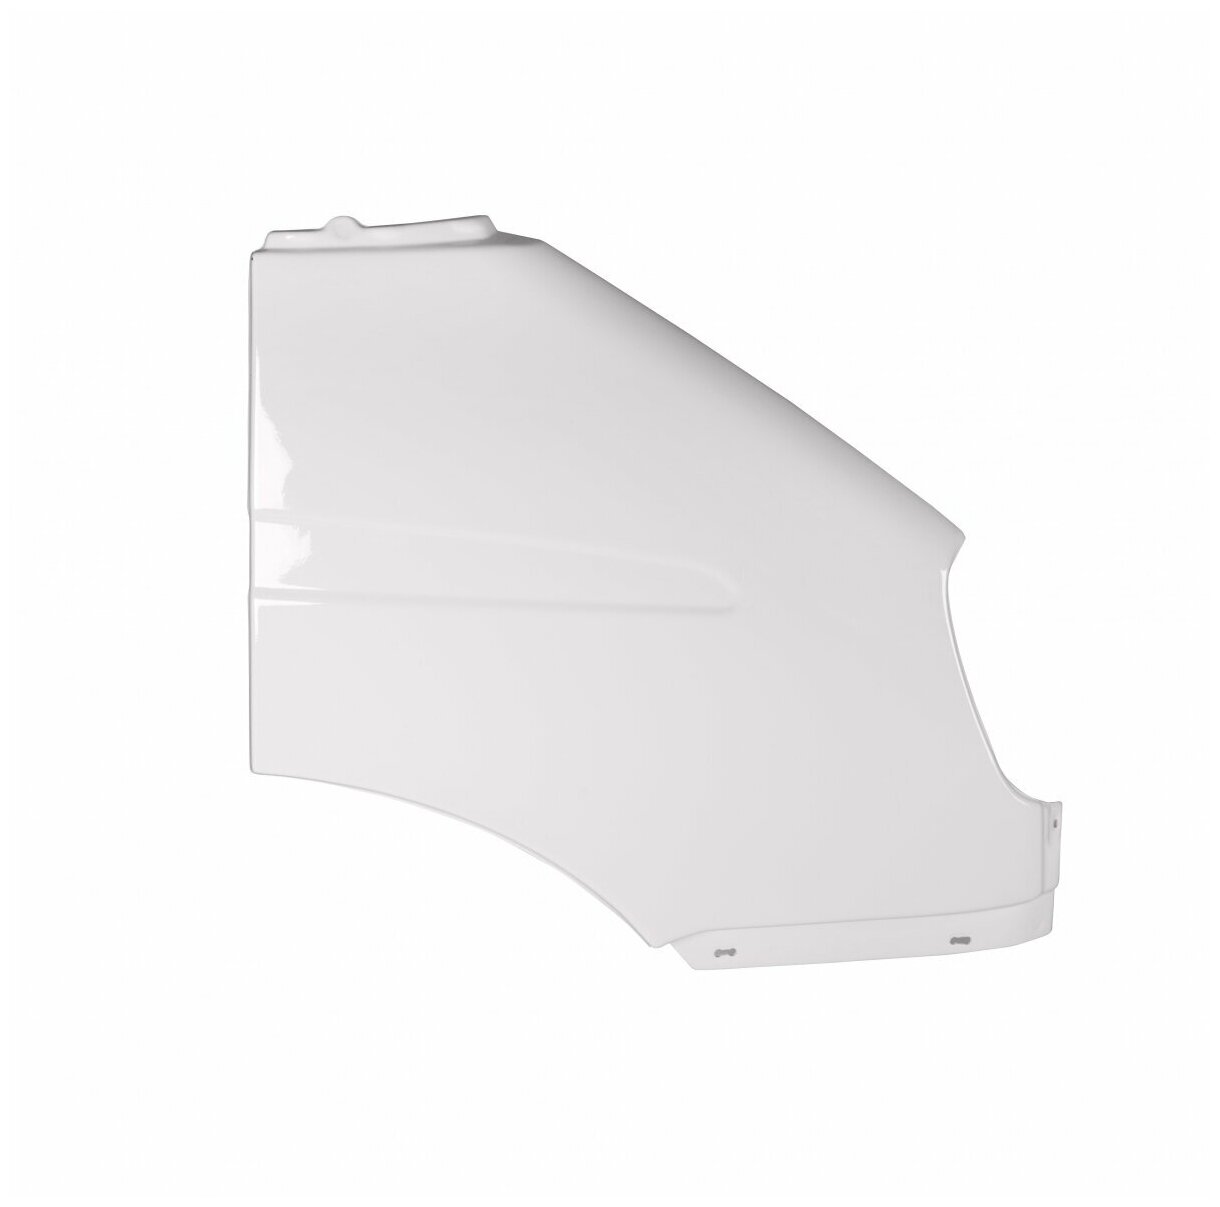 Крыло для а/м Газель переднее правое пластиковое (окрашенное белый)